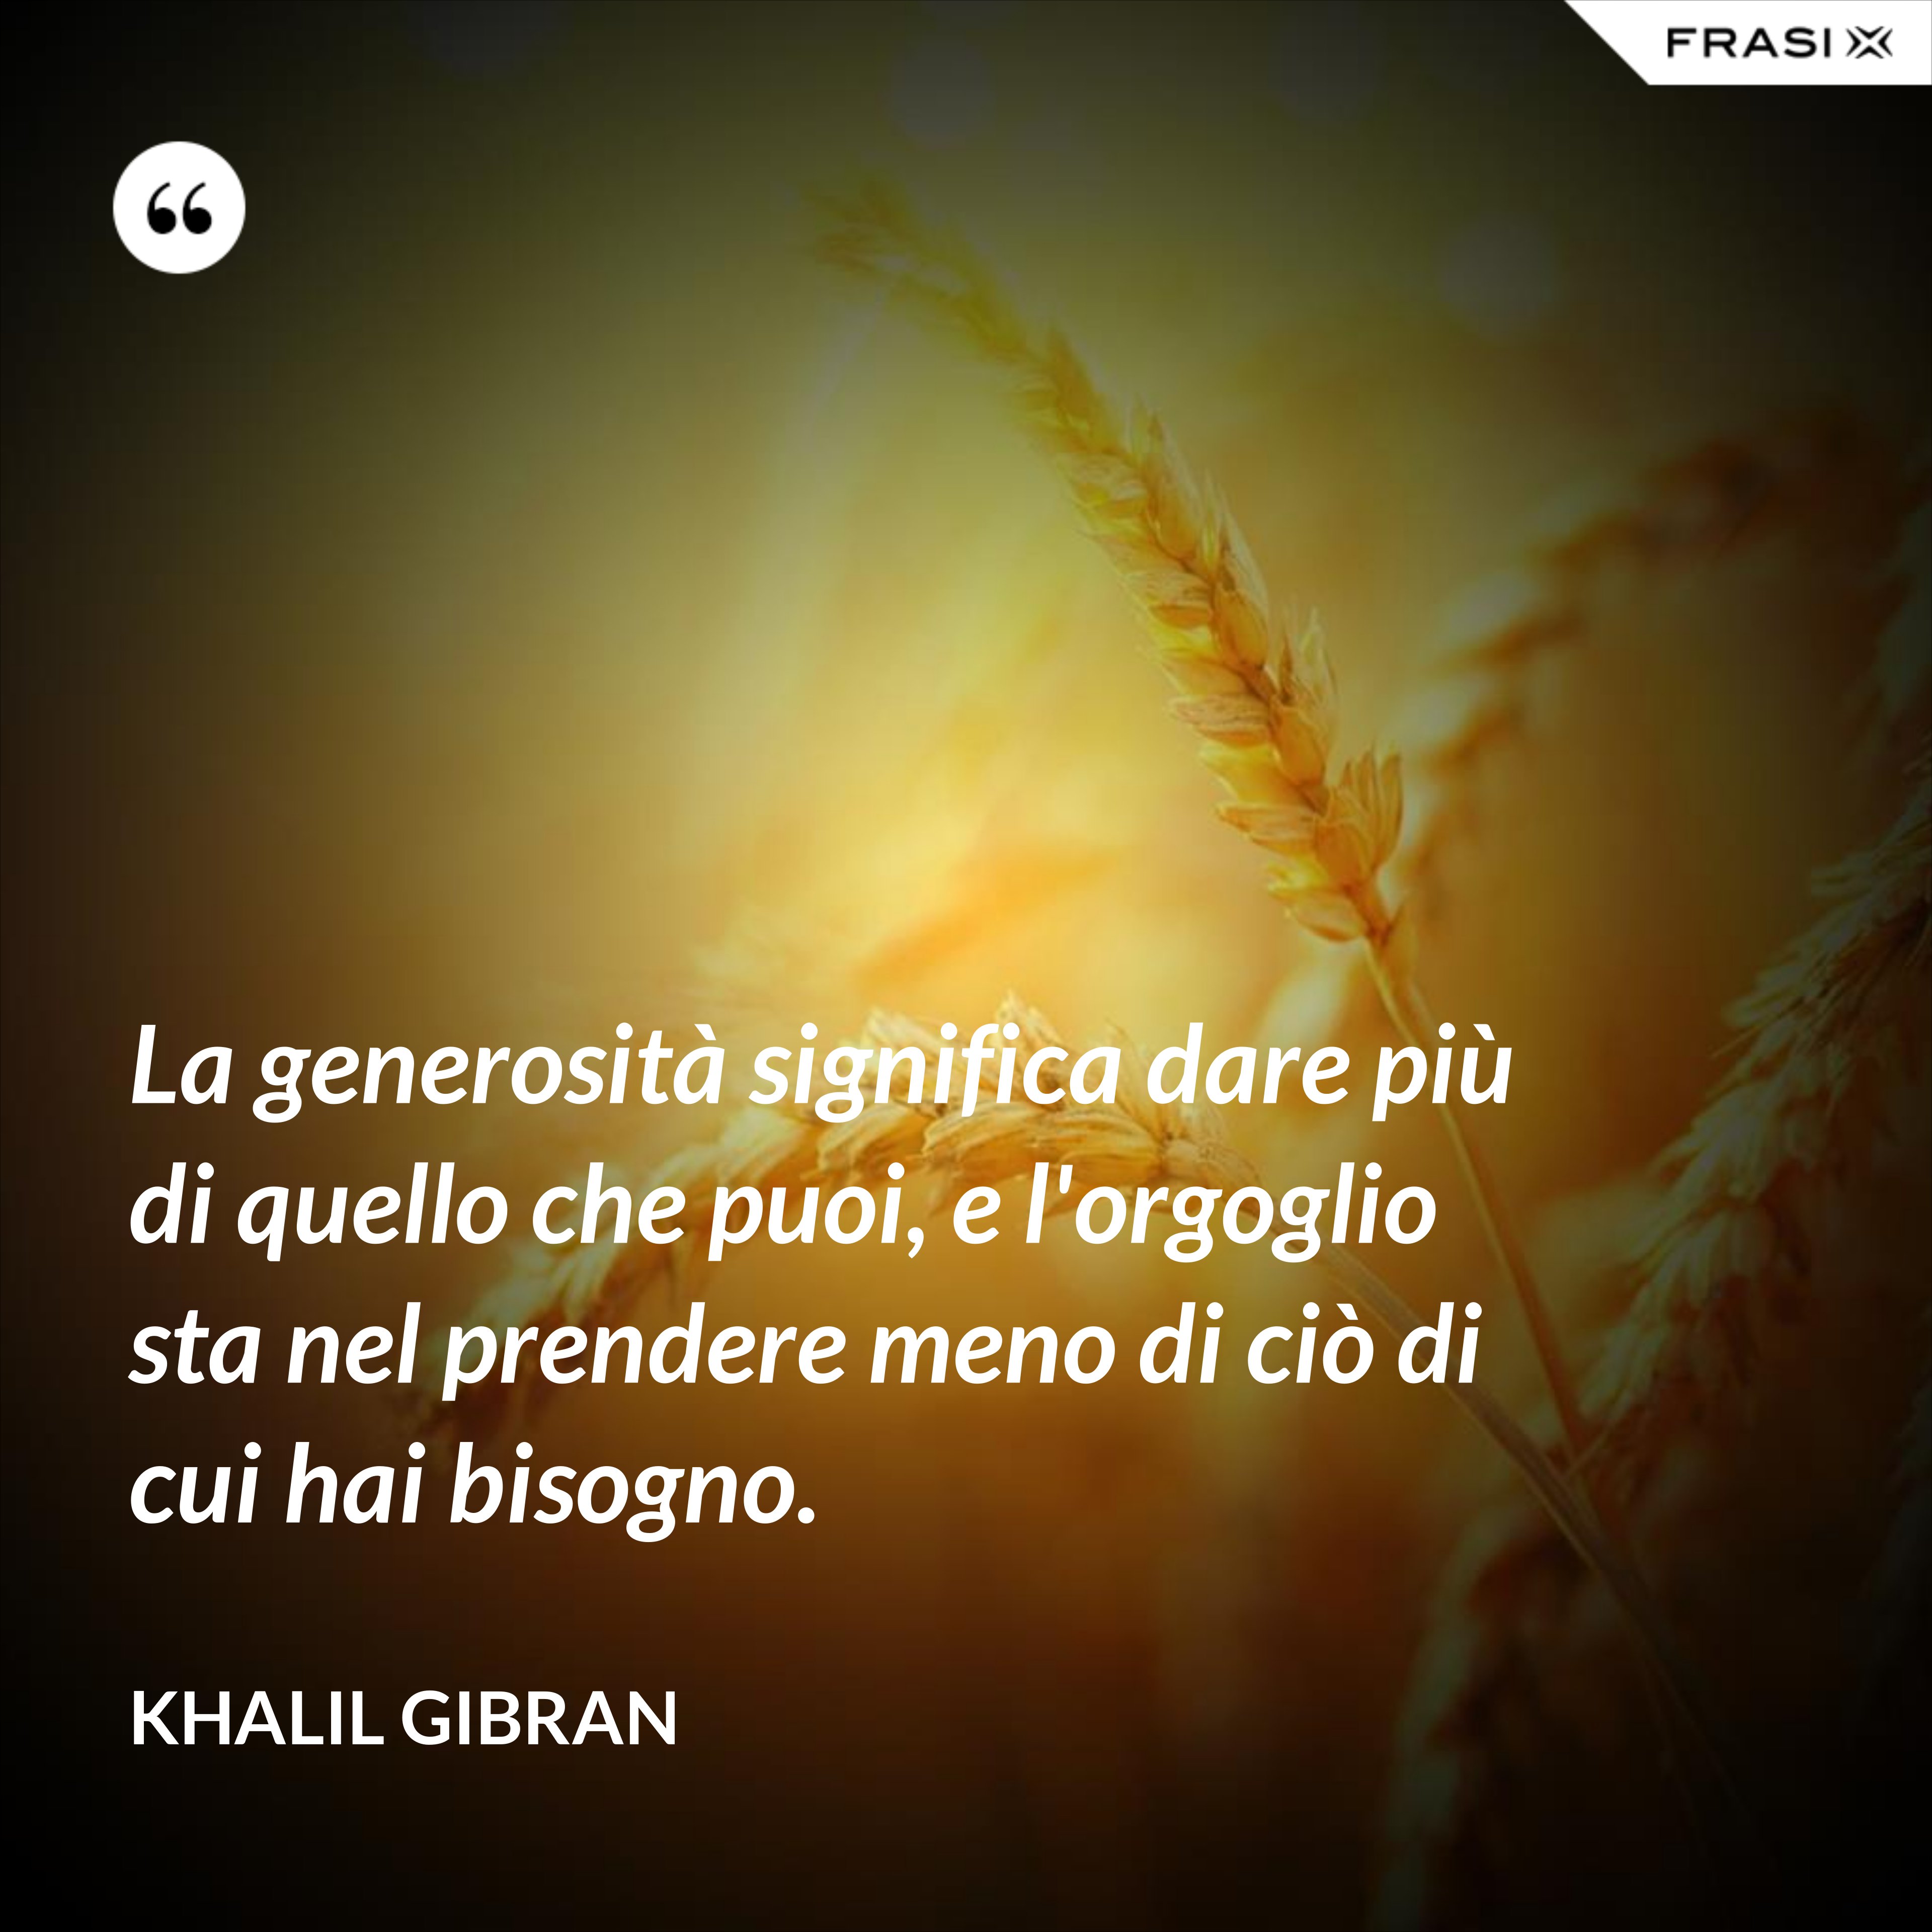 La generosità significa dare più di quello che puoi, e l'orgoglio sta nel prendere meno di ciò di cui hai bisogno. - Khalil Gibran